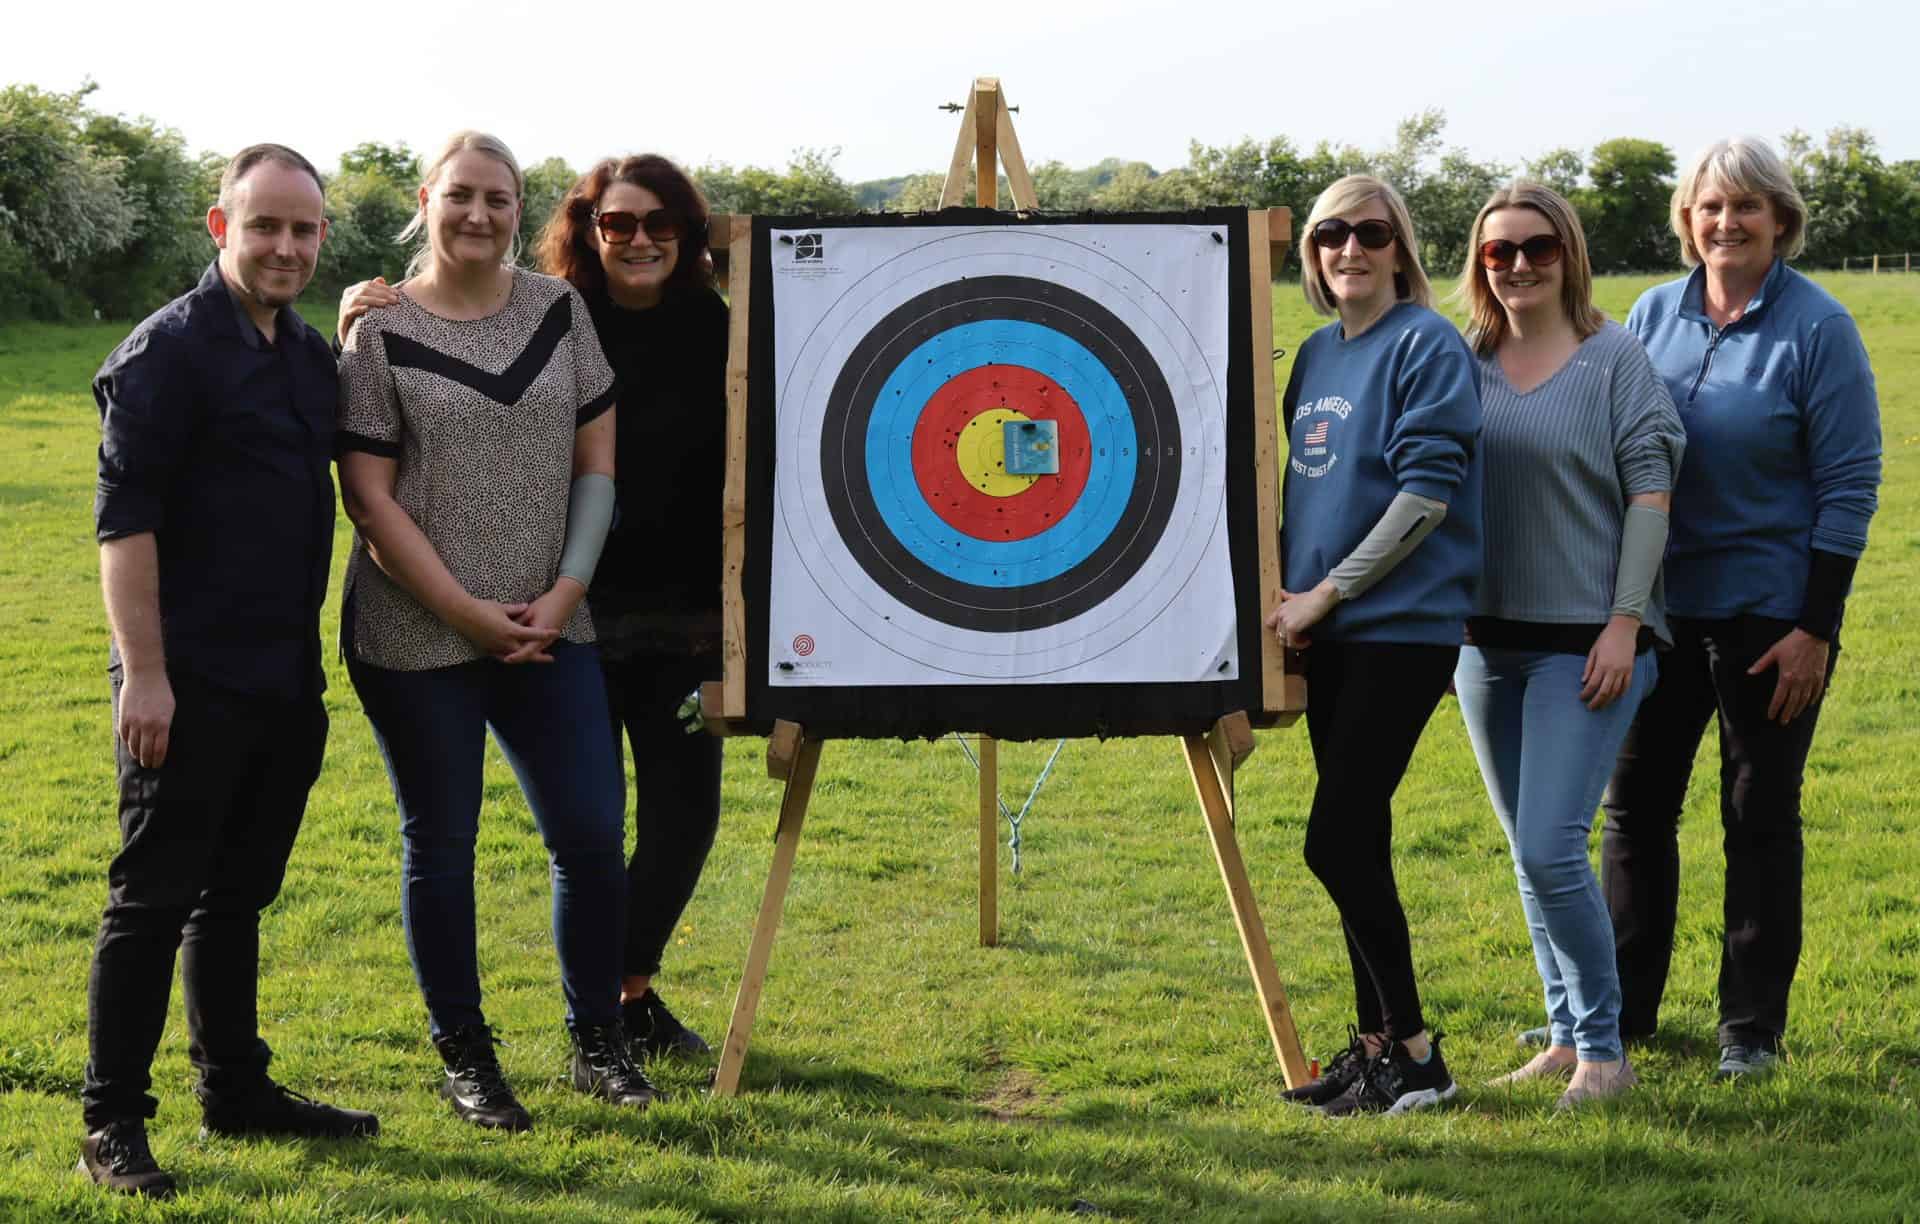 NHS archers - Burscough Archers